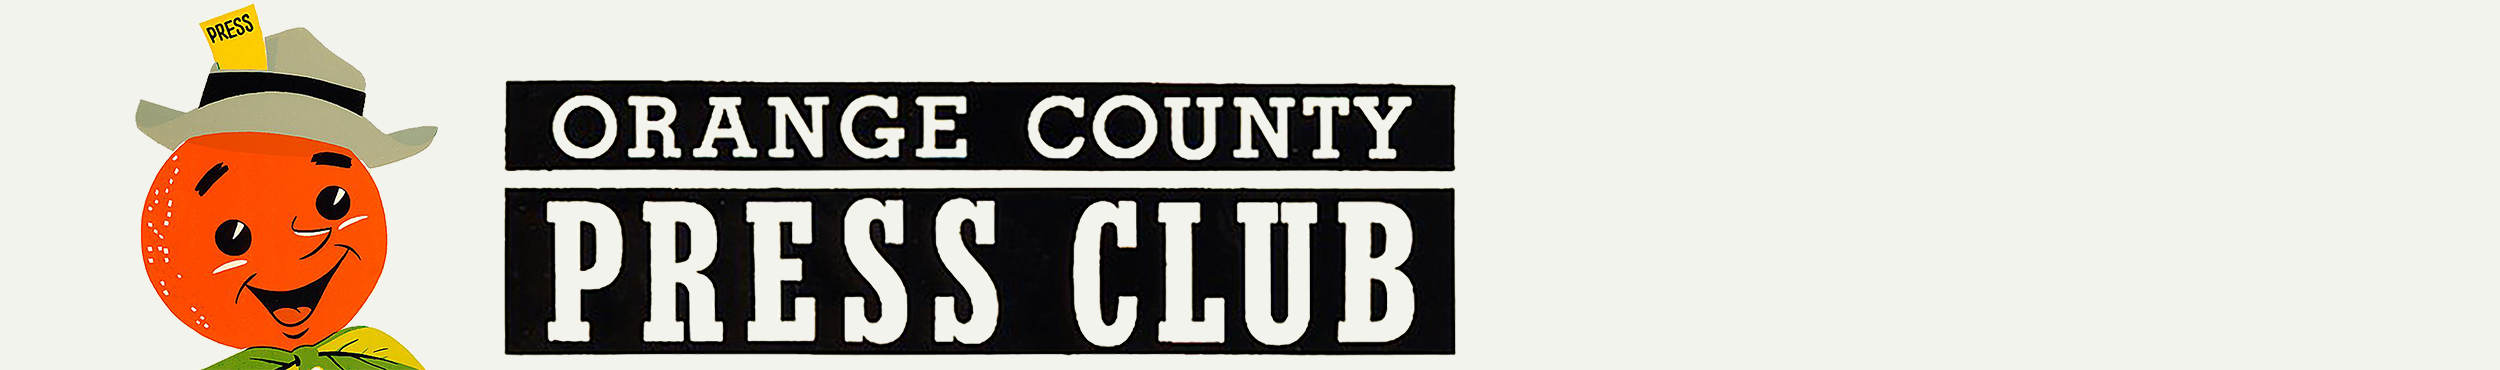 OC Press Club Logo